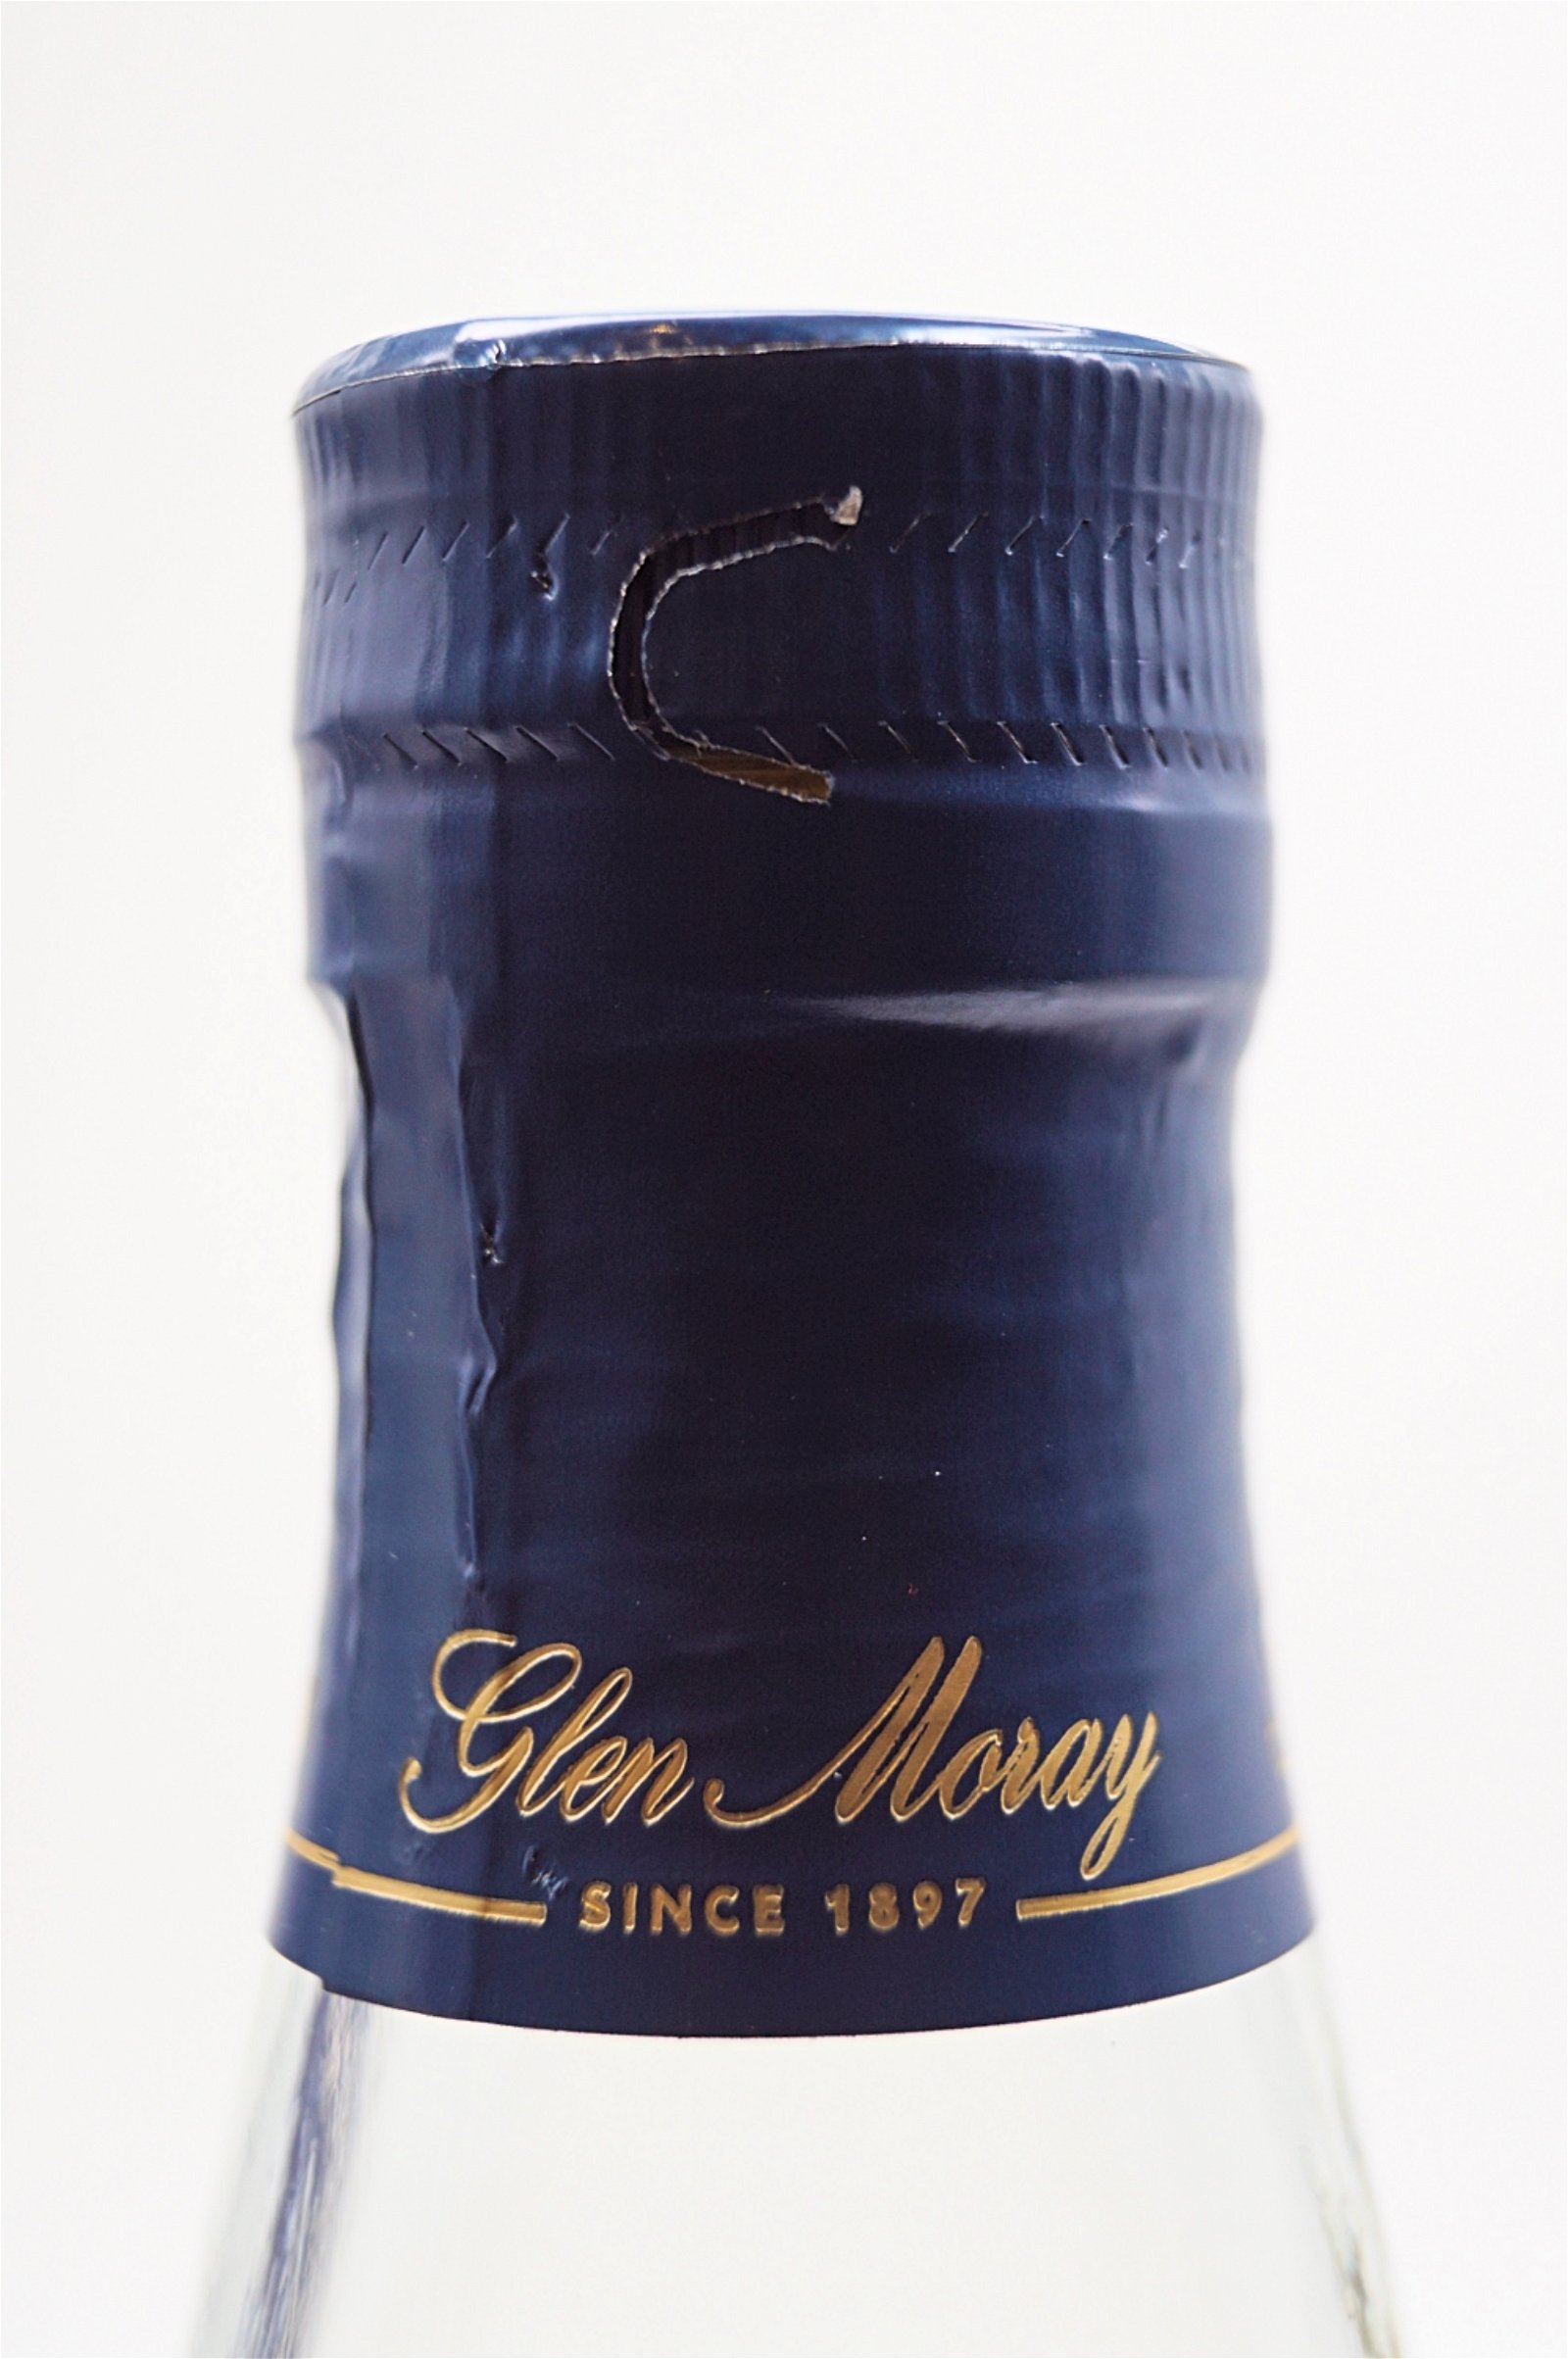 Glen Moray Rye Cask Finish Speyside Single Malt Scotch Whisky